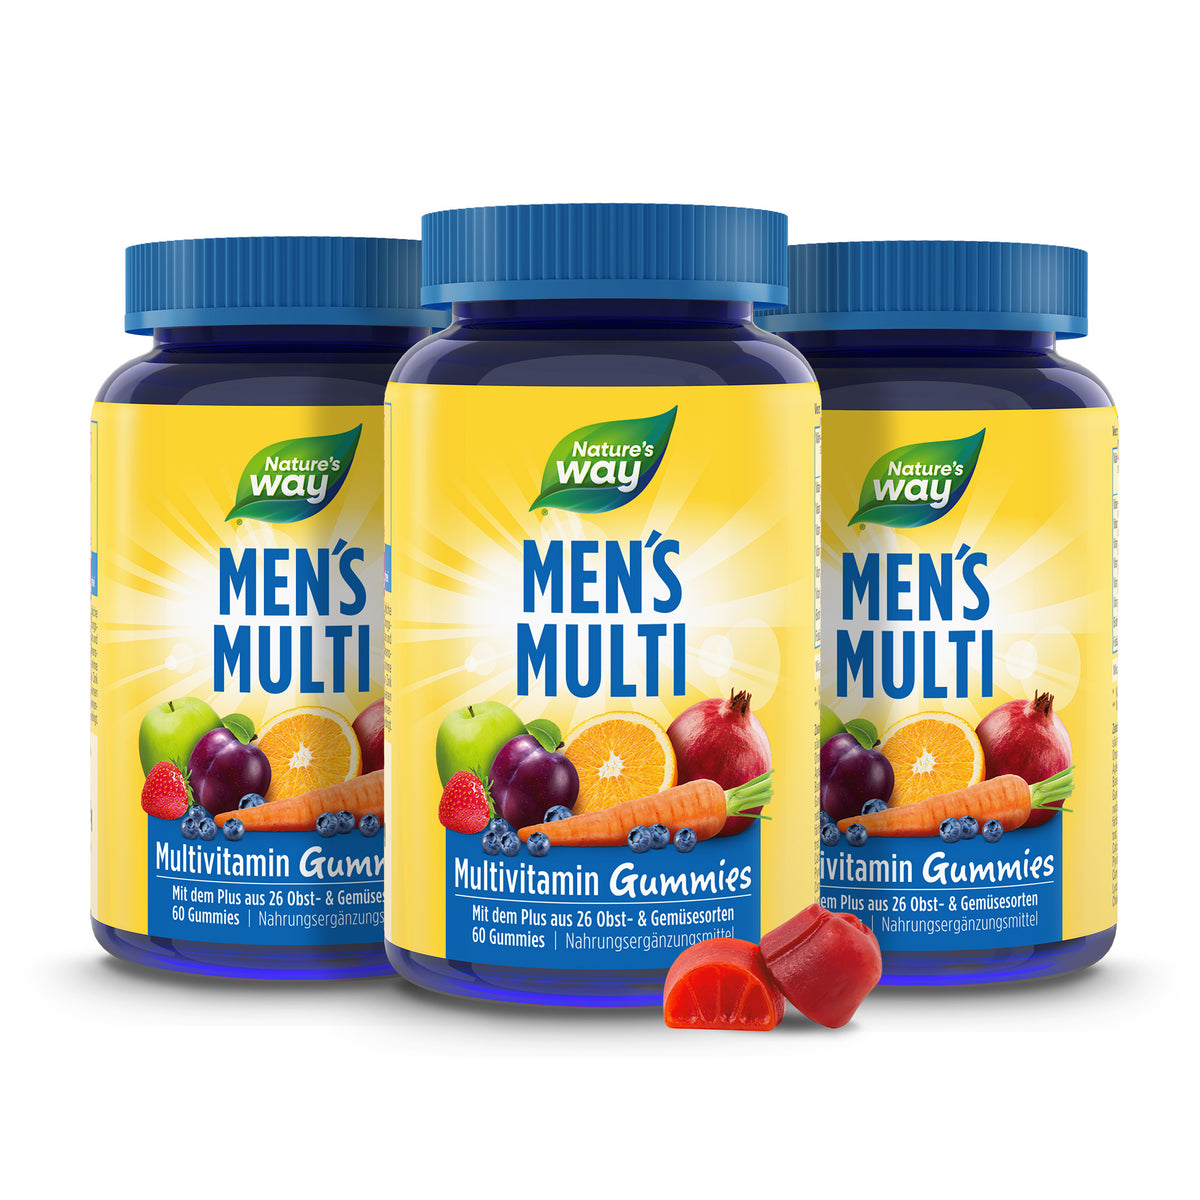 Men’s Multi Multivitamin Gummies